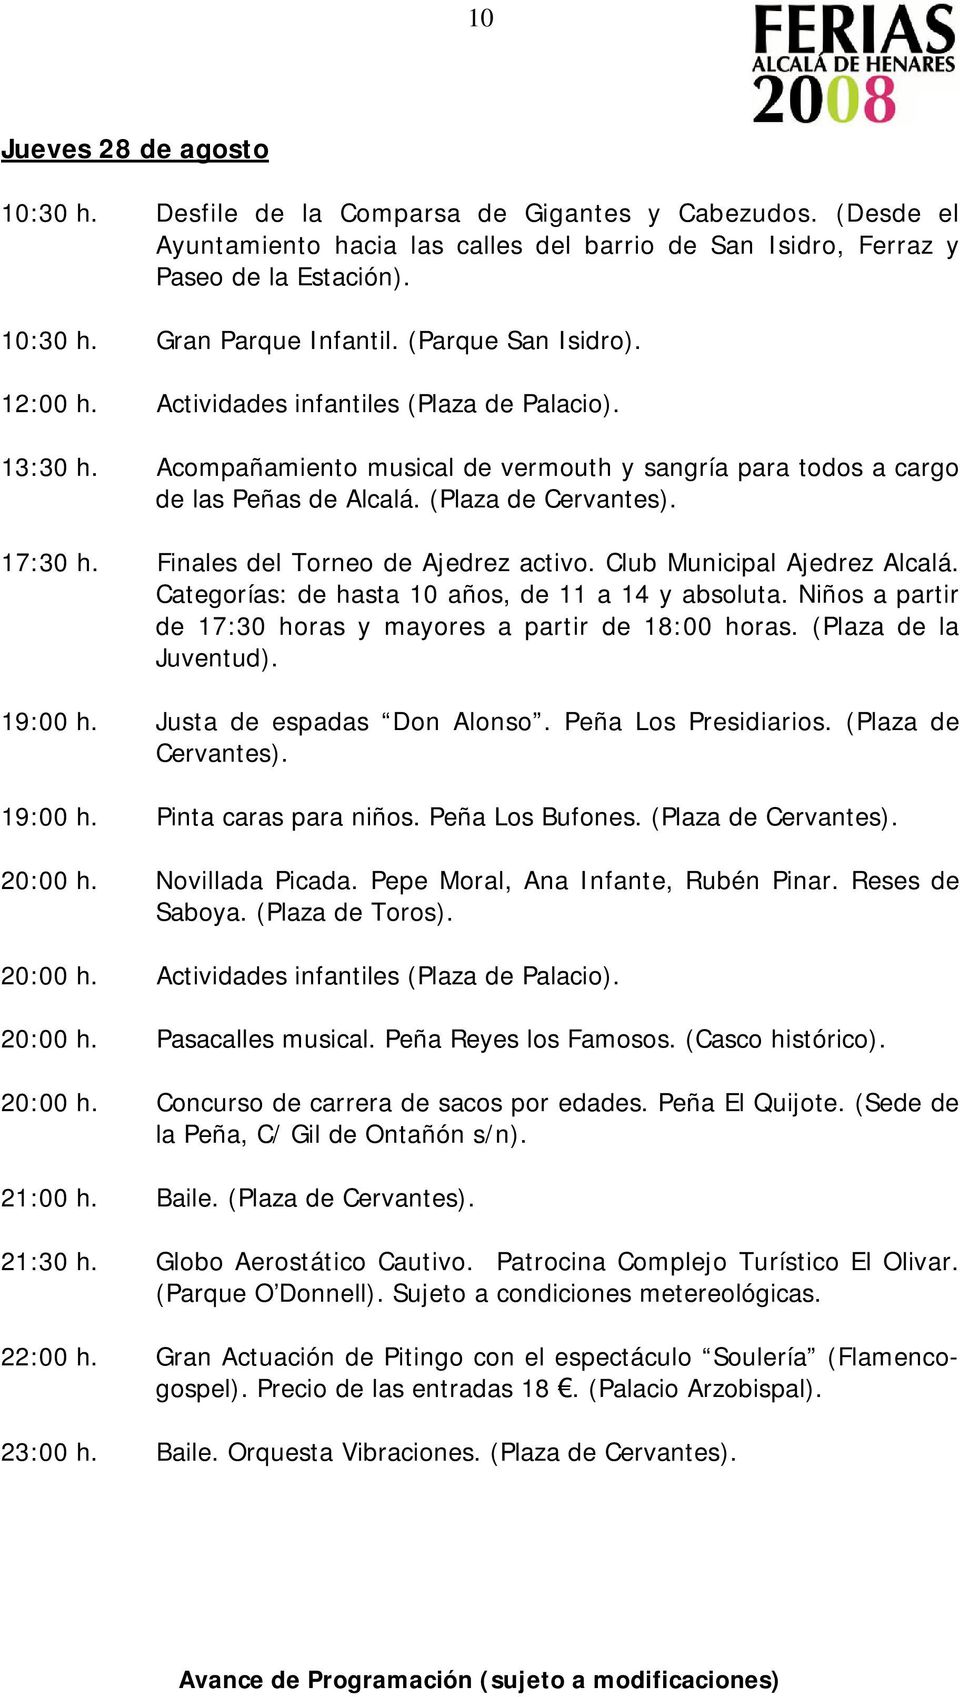 Finales del Torneo de Ajedrez activo. Club Municipal Ajedrez Alcalá. Categorías: de hasta 10 años, de 11 a 14 y absoluta. Niños a partir de 17:30 horas y mayores a partir de 18:00 horas.